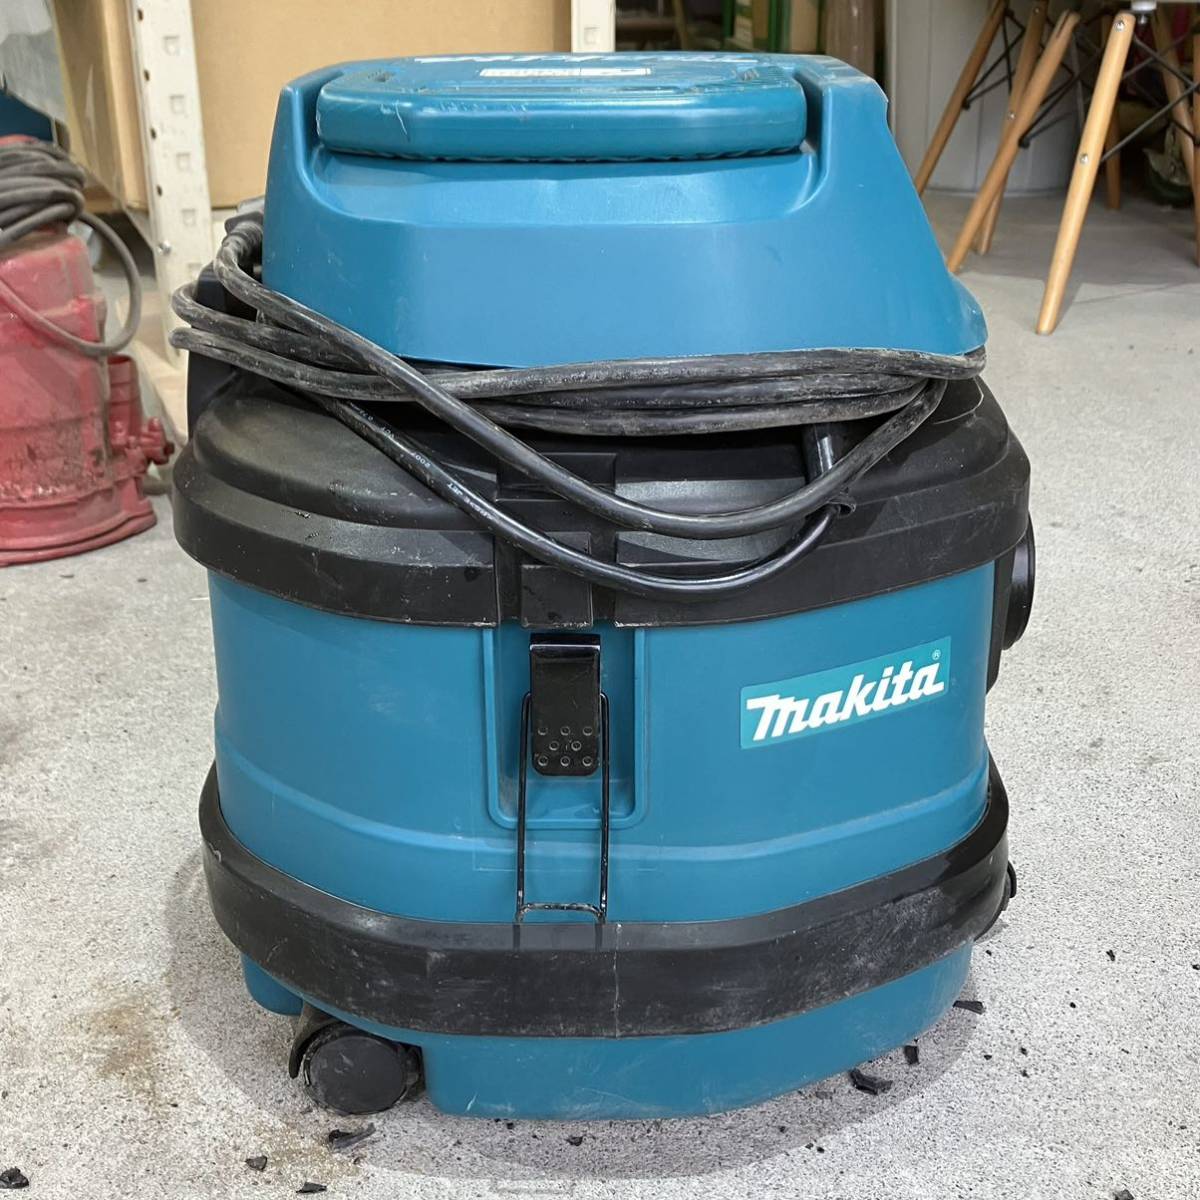 makita モデル470 乾湿両用 集塵機 マキタ 集じん機 掃除機 クリーナー 業務用 ホース付 吸引 粉塵 小型 100V_画像4